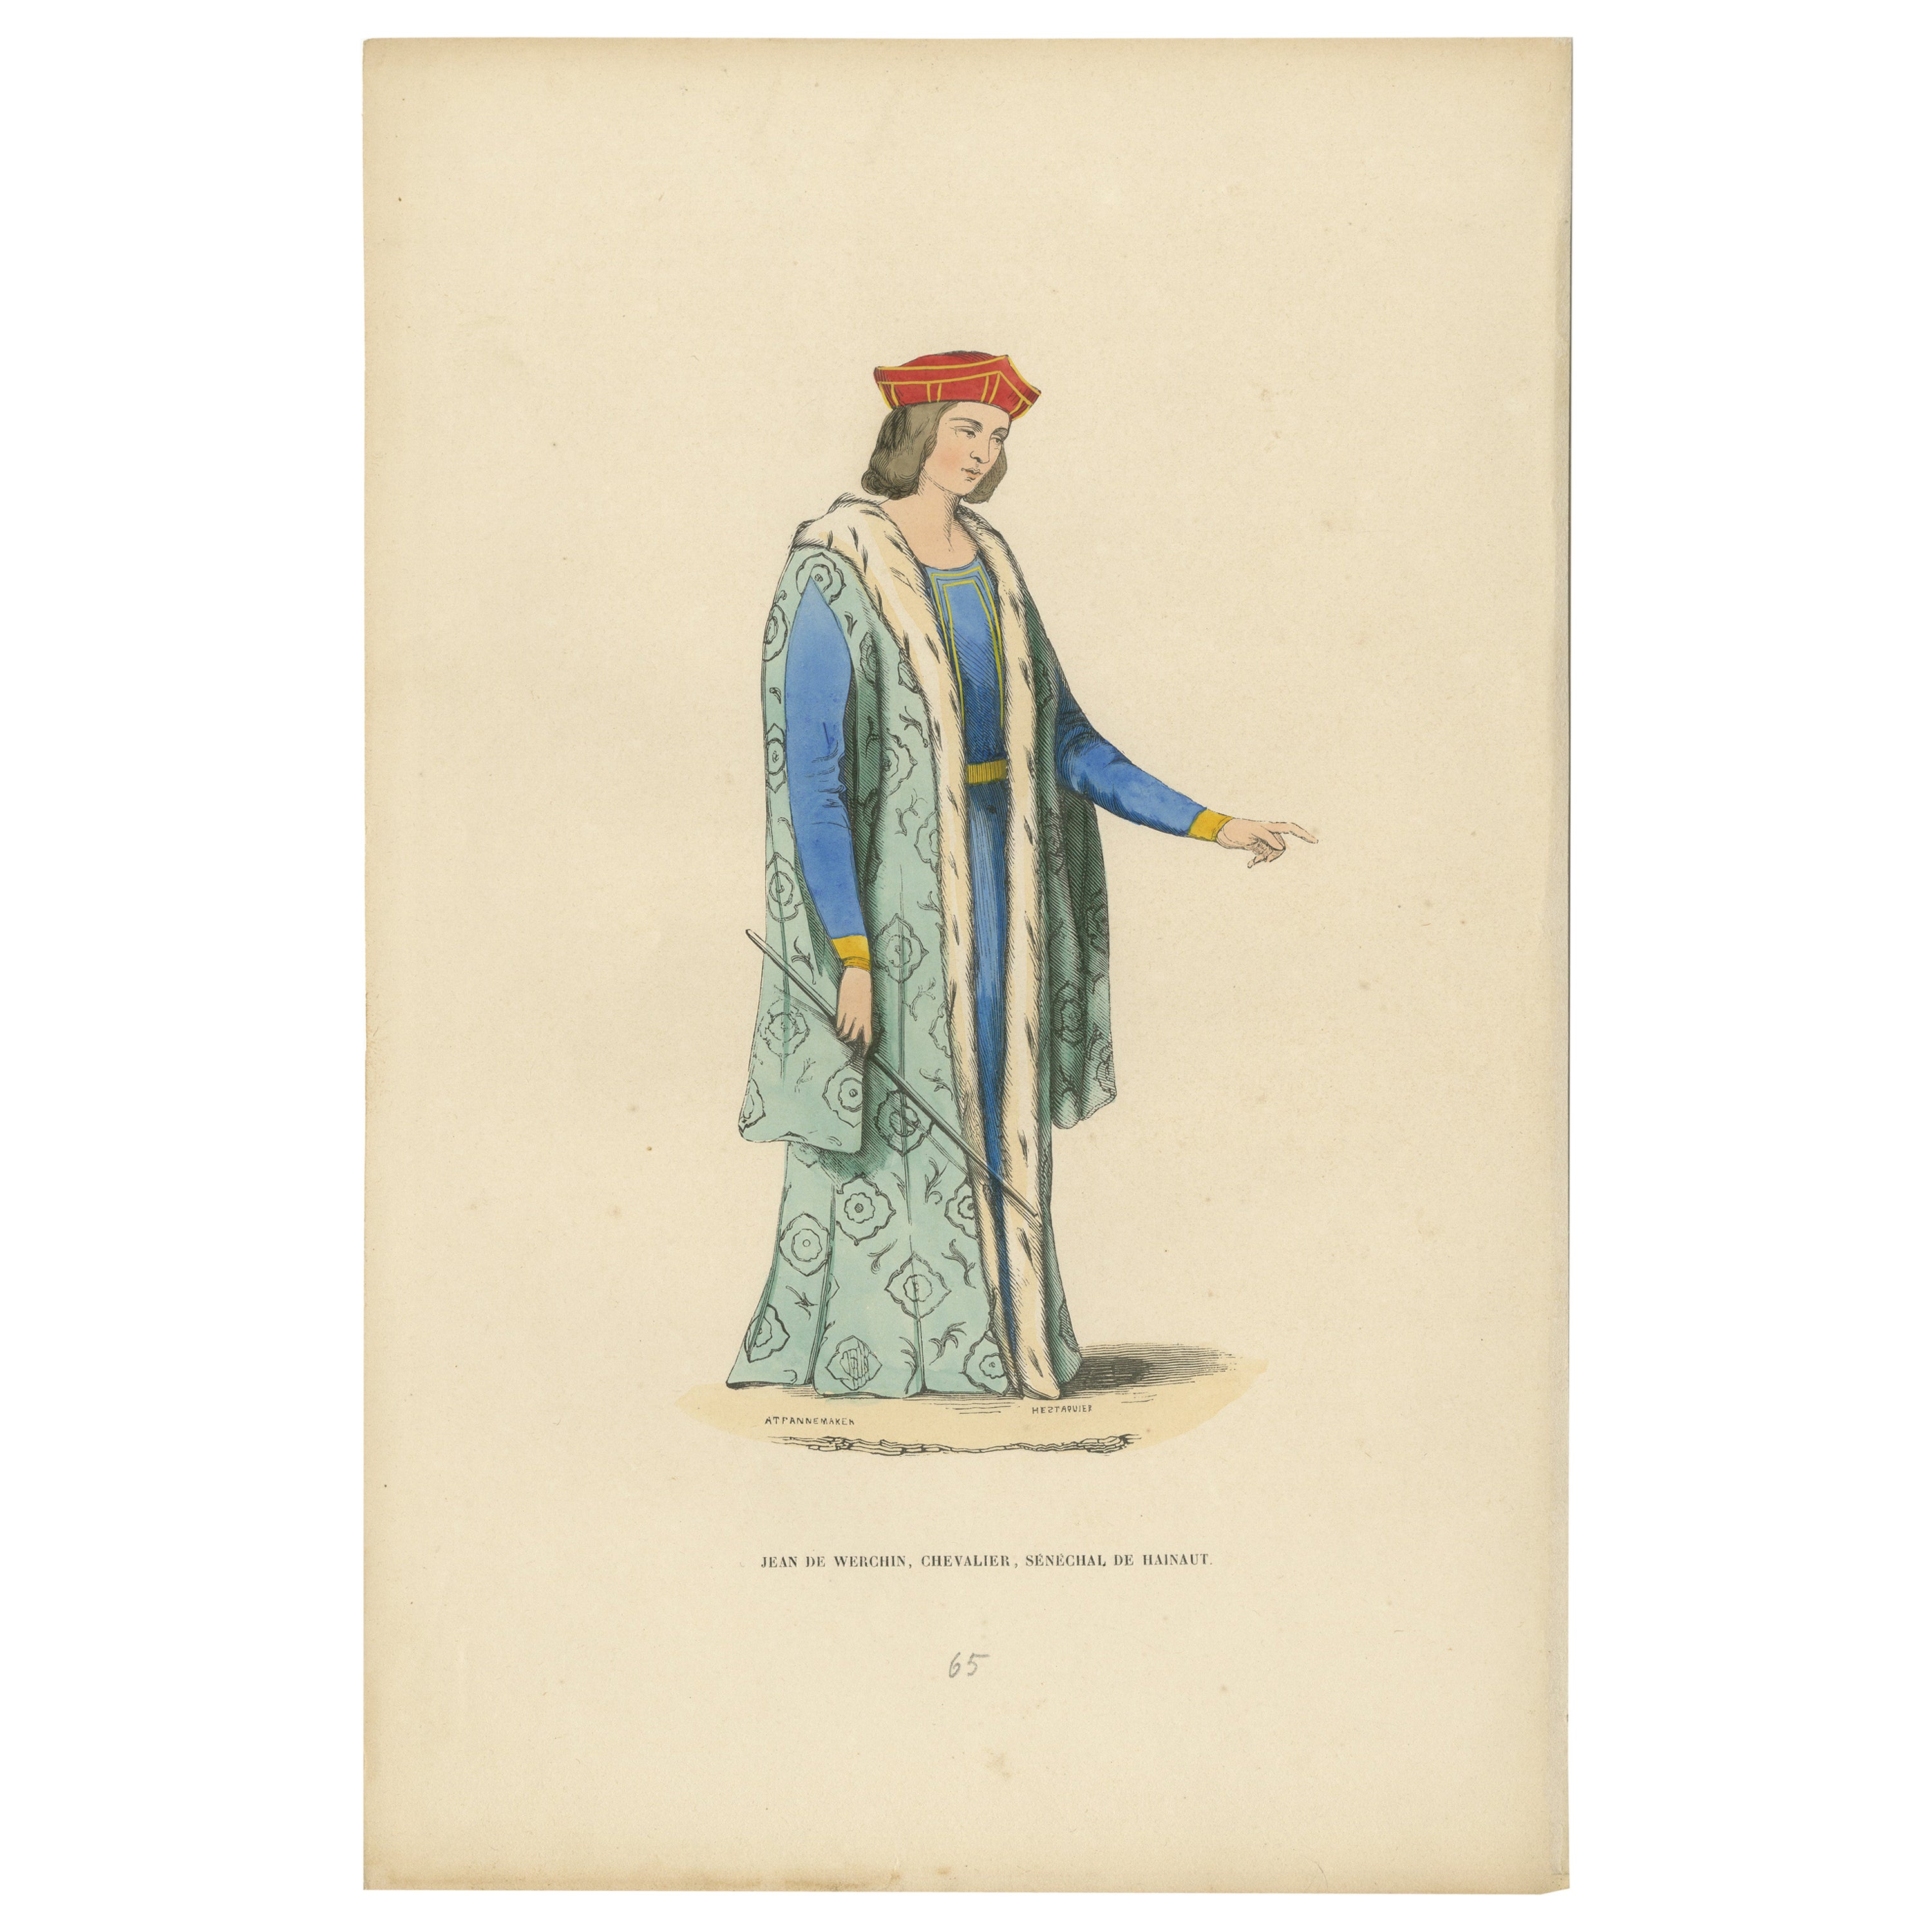 Jean de Werchin, un chevalier et Seneschal d'Hainaut : Le Poise du chevalier, 1847